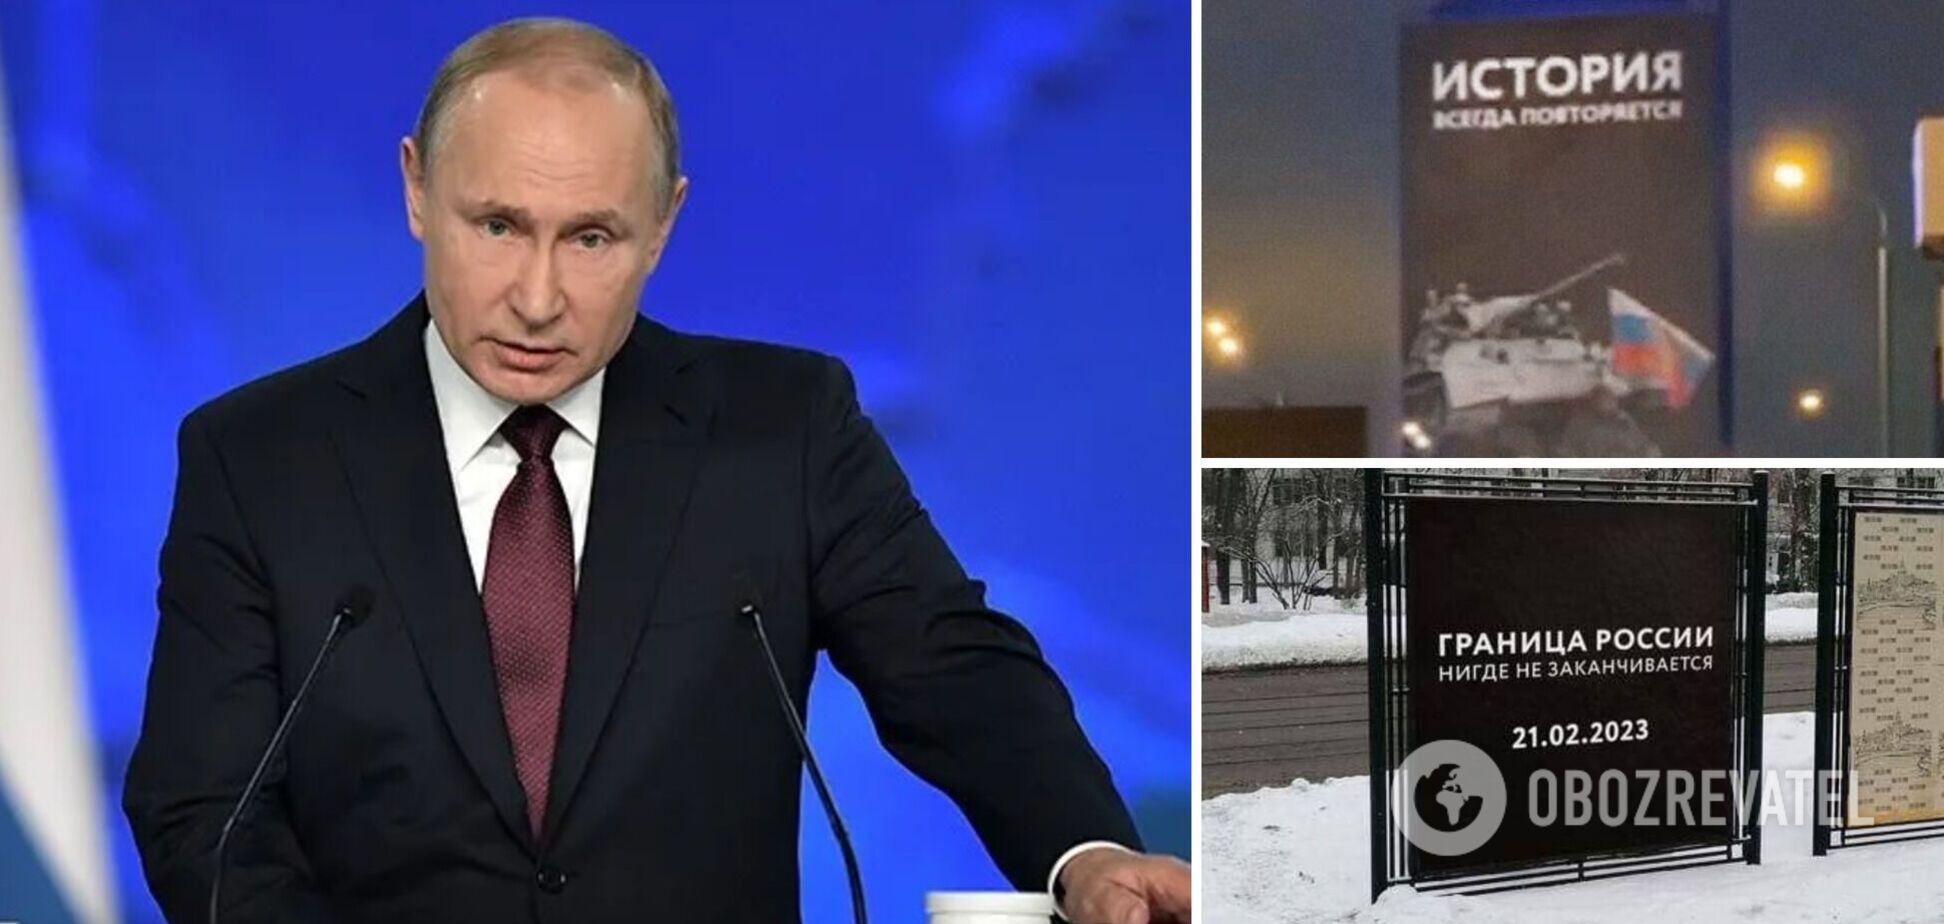 'Граница России нигде не заканчивается': в РФ запустили наглую рекламу перед обращением Путина, пока его солдаты гибнут тысячами. Видео